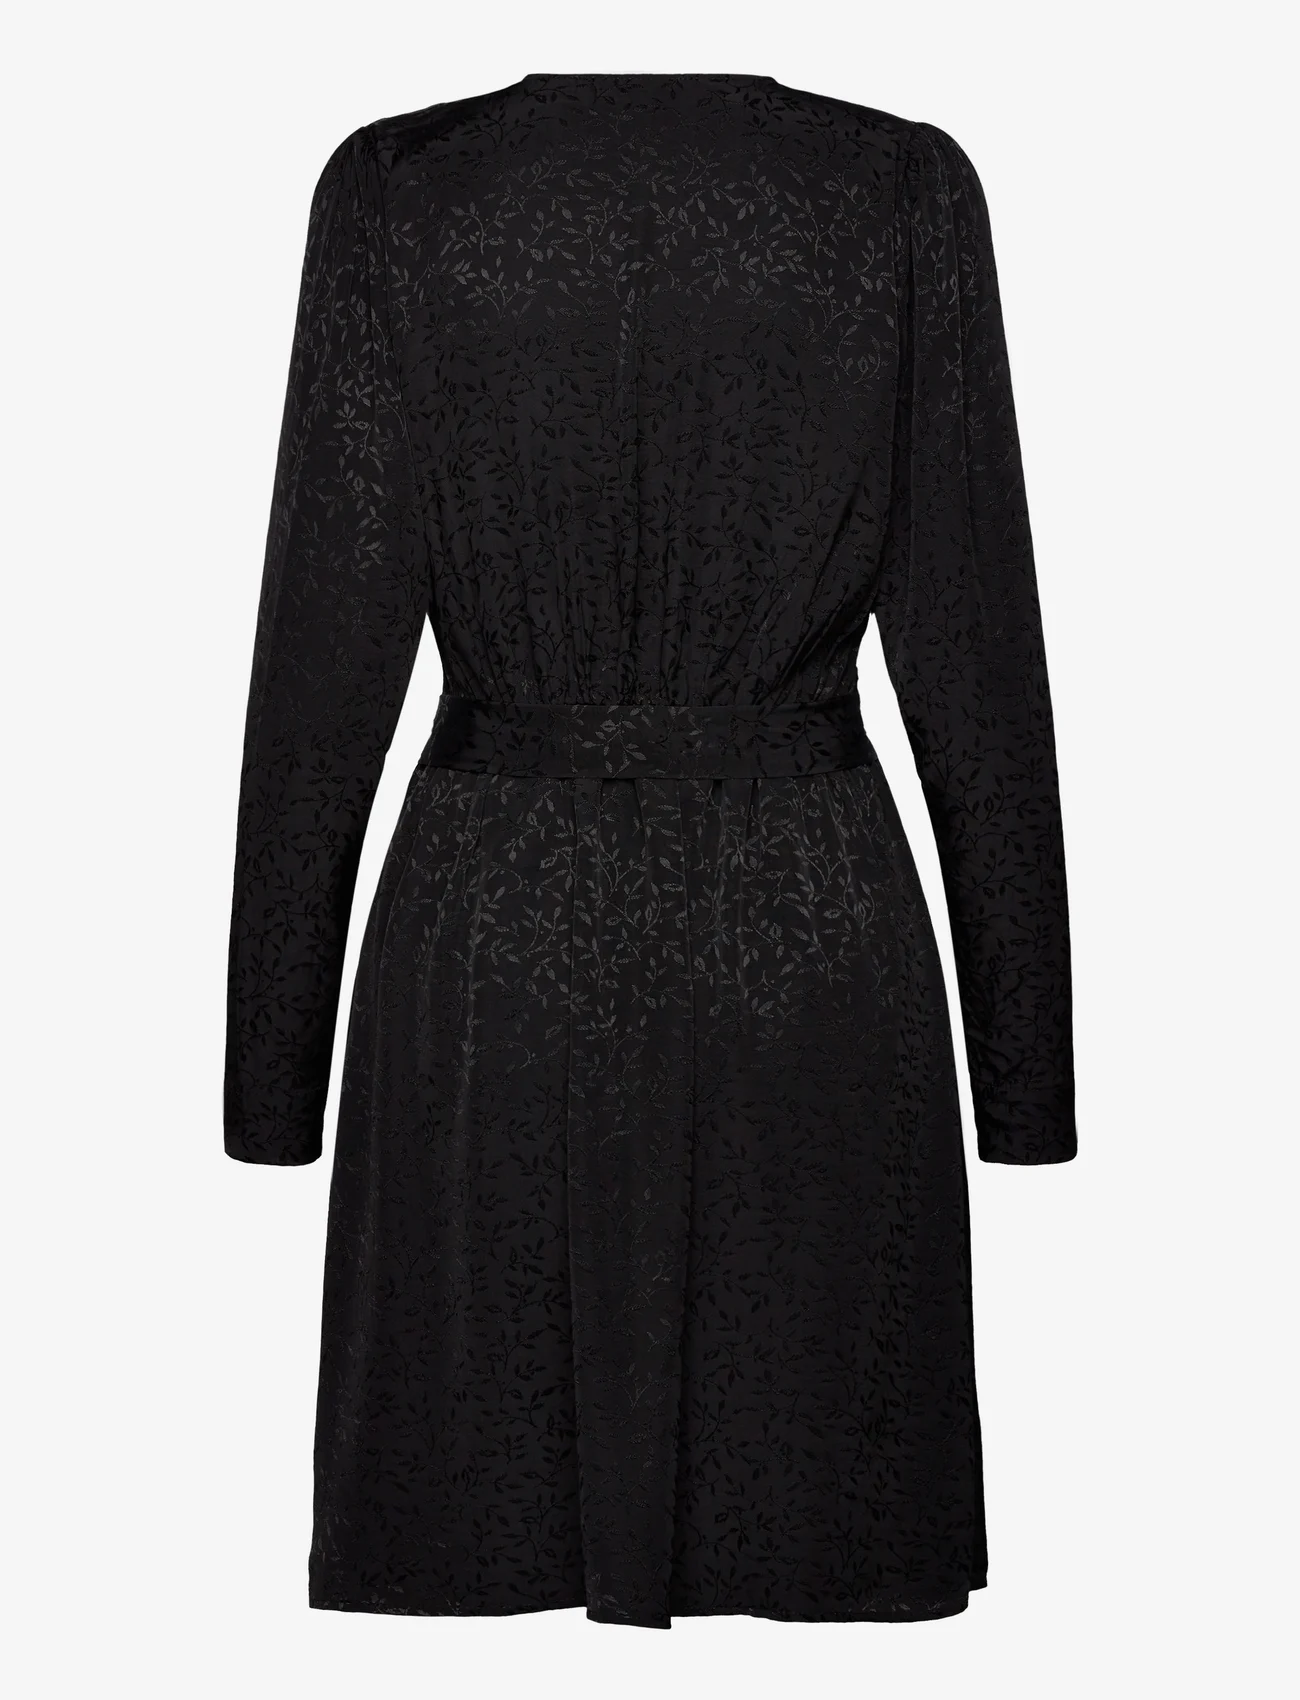 Selected Femme - SLFCELESTE LS SHORT DRESS B - festmode zu outlet-preisen - black - 1